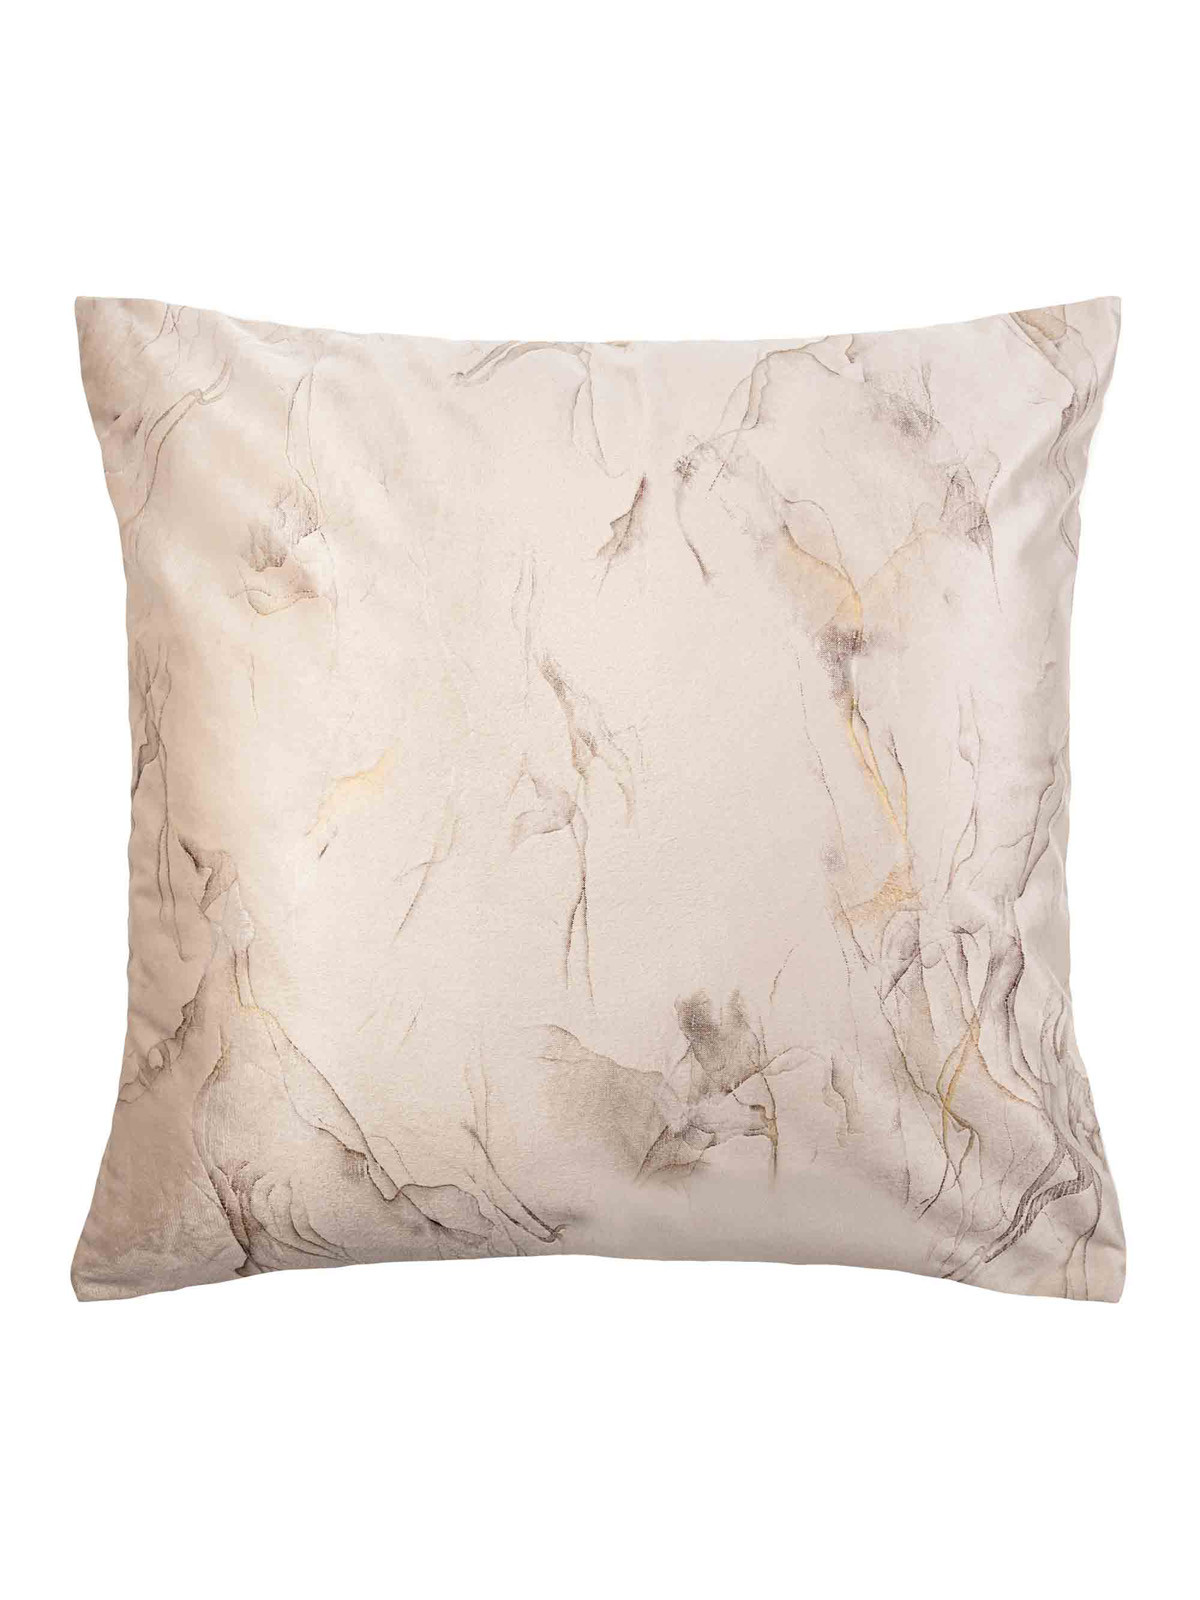 Edoti Marmy decorative pillowcase 45x45